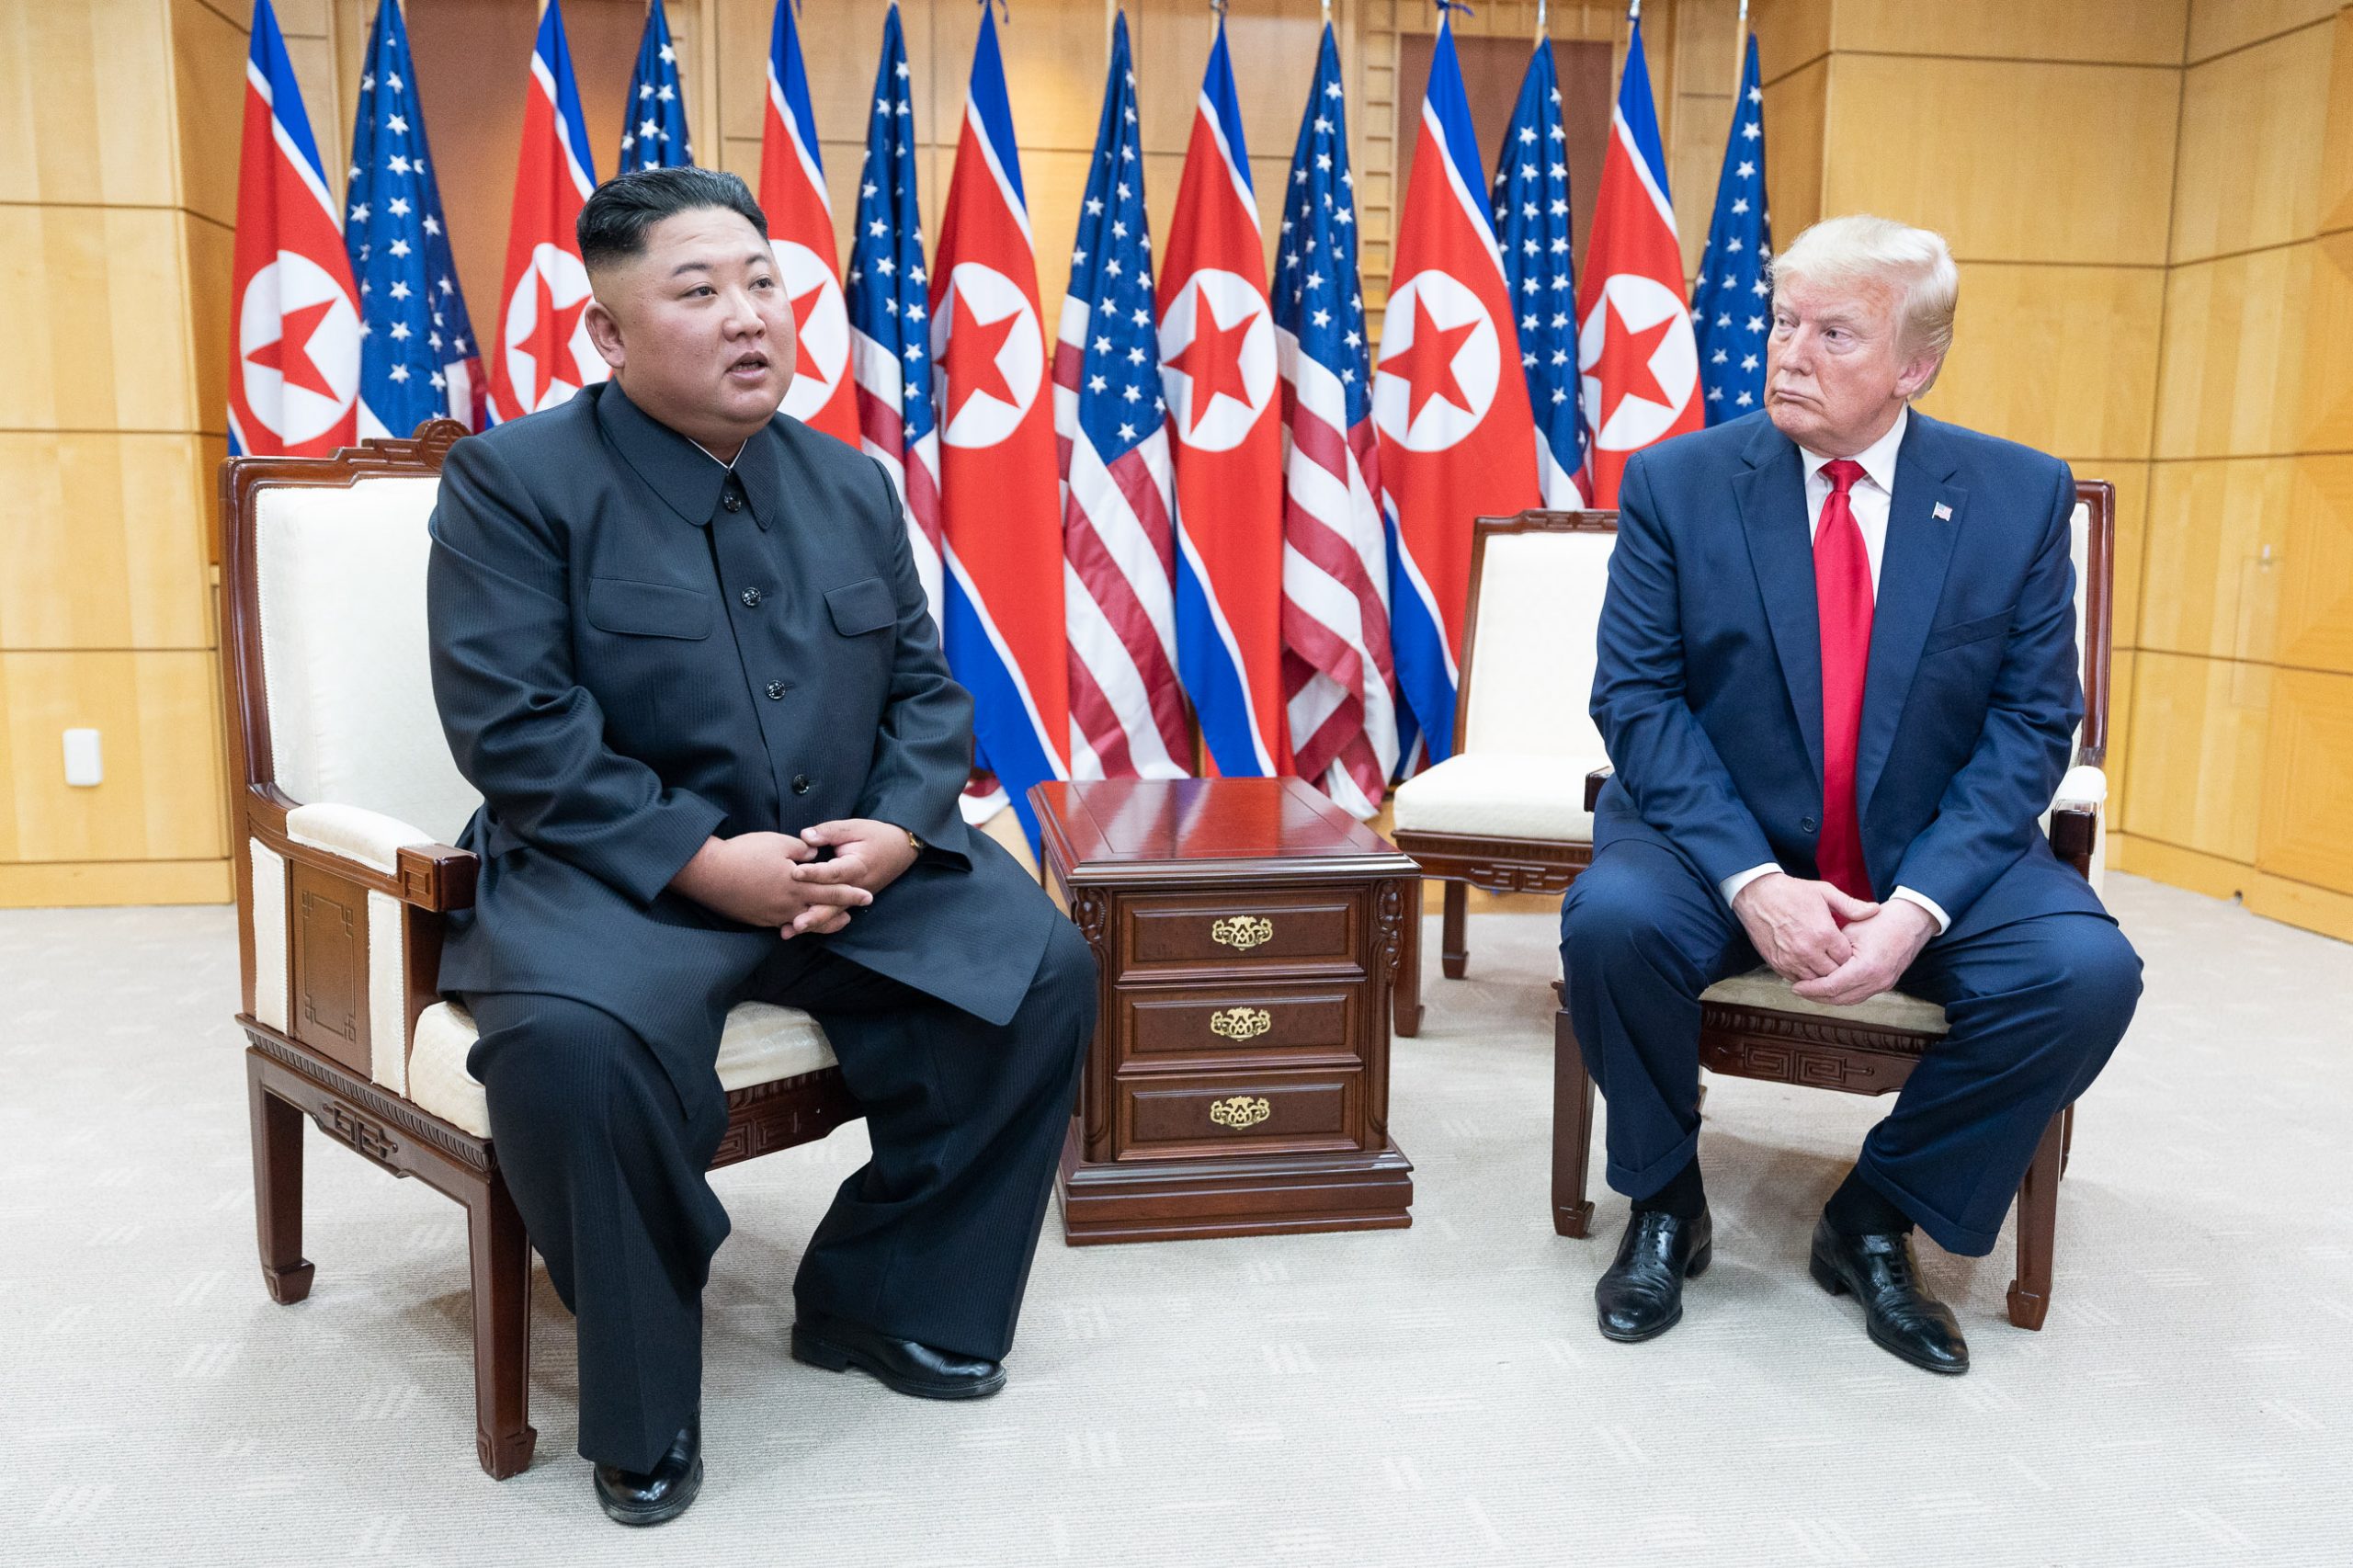 Le leader nord-coréen Kim Jong-un et le président américain Donald Trump dans la Maison de la liberté sur la ligne démilitarisée qui sépare les deux Corées à Panmunjom, le 30 juin 2019. (Source : Wikimedia Commons)